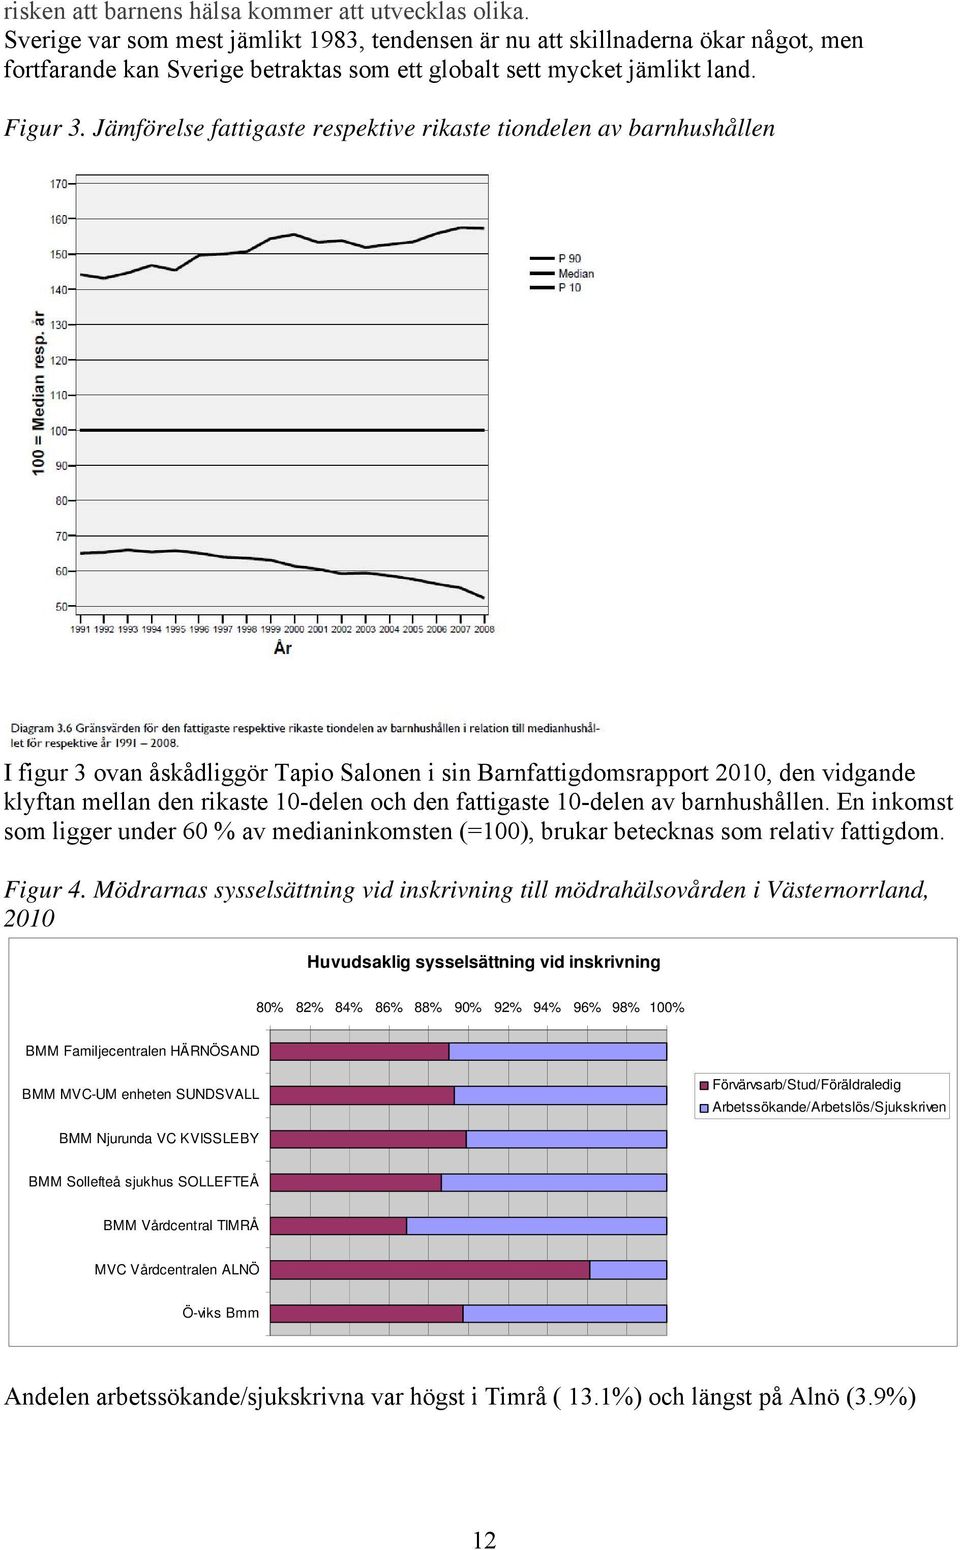 Jämförelse fattigaste respektive rikaste tiondelen av barnhushållen I figur 3 ovan åskådliggör Tapio Salonen i sin Barnfattigdomsrapport 2010, den vidgande klyftan mellan den rikaste 10-delen och den